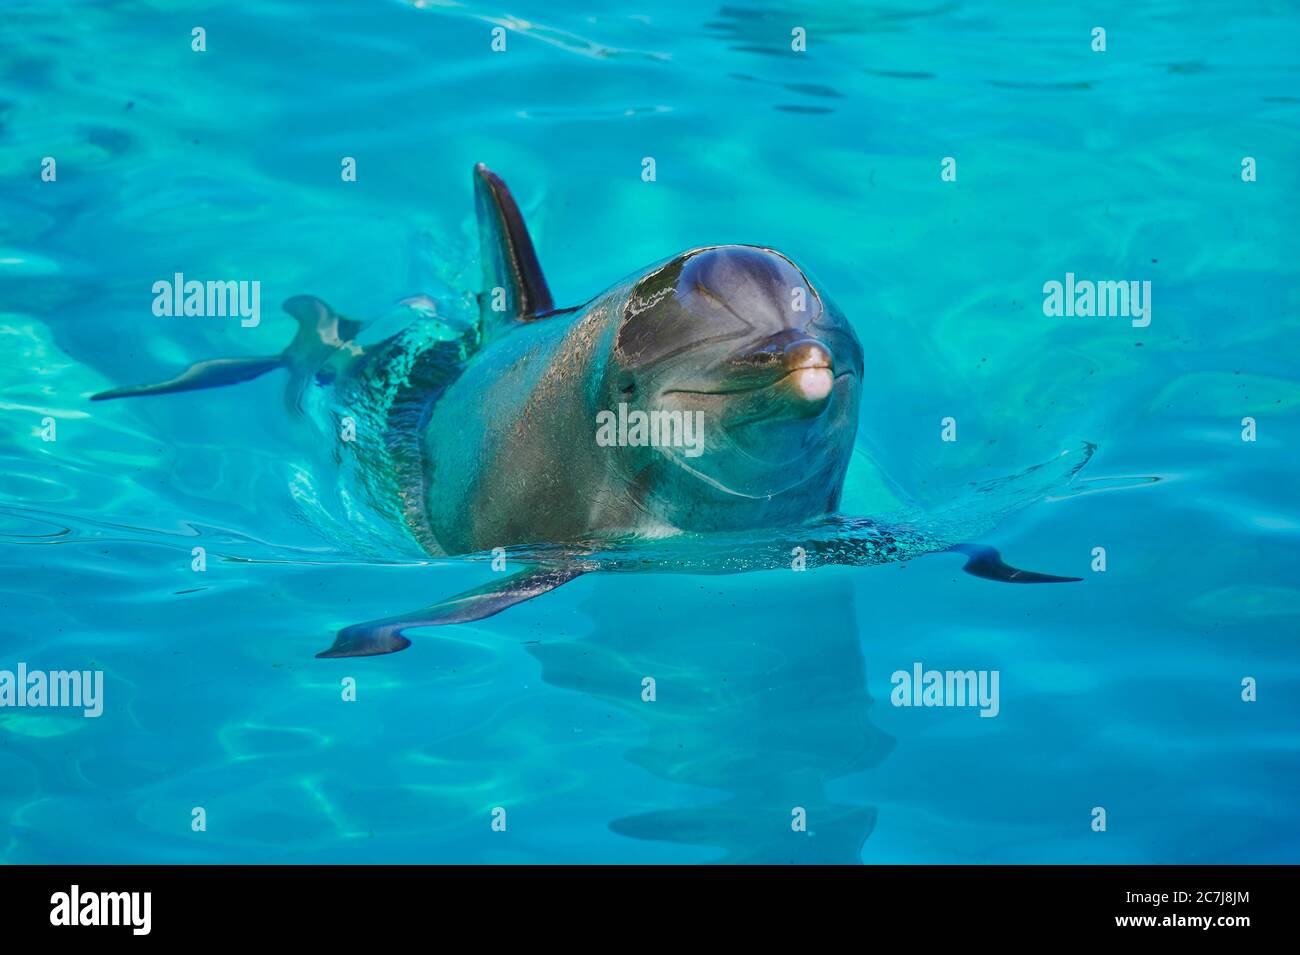 Dauphin à nez en bouteille, dauphin à nez en bouteille (Tursiops truncatus), nage dans un dauphinarium, vue de face Banque D'Images